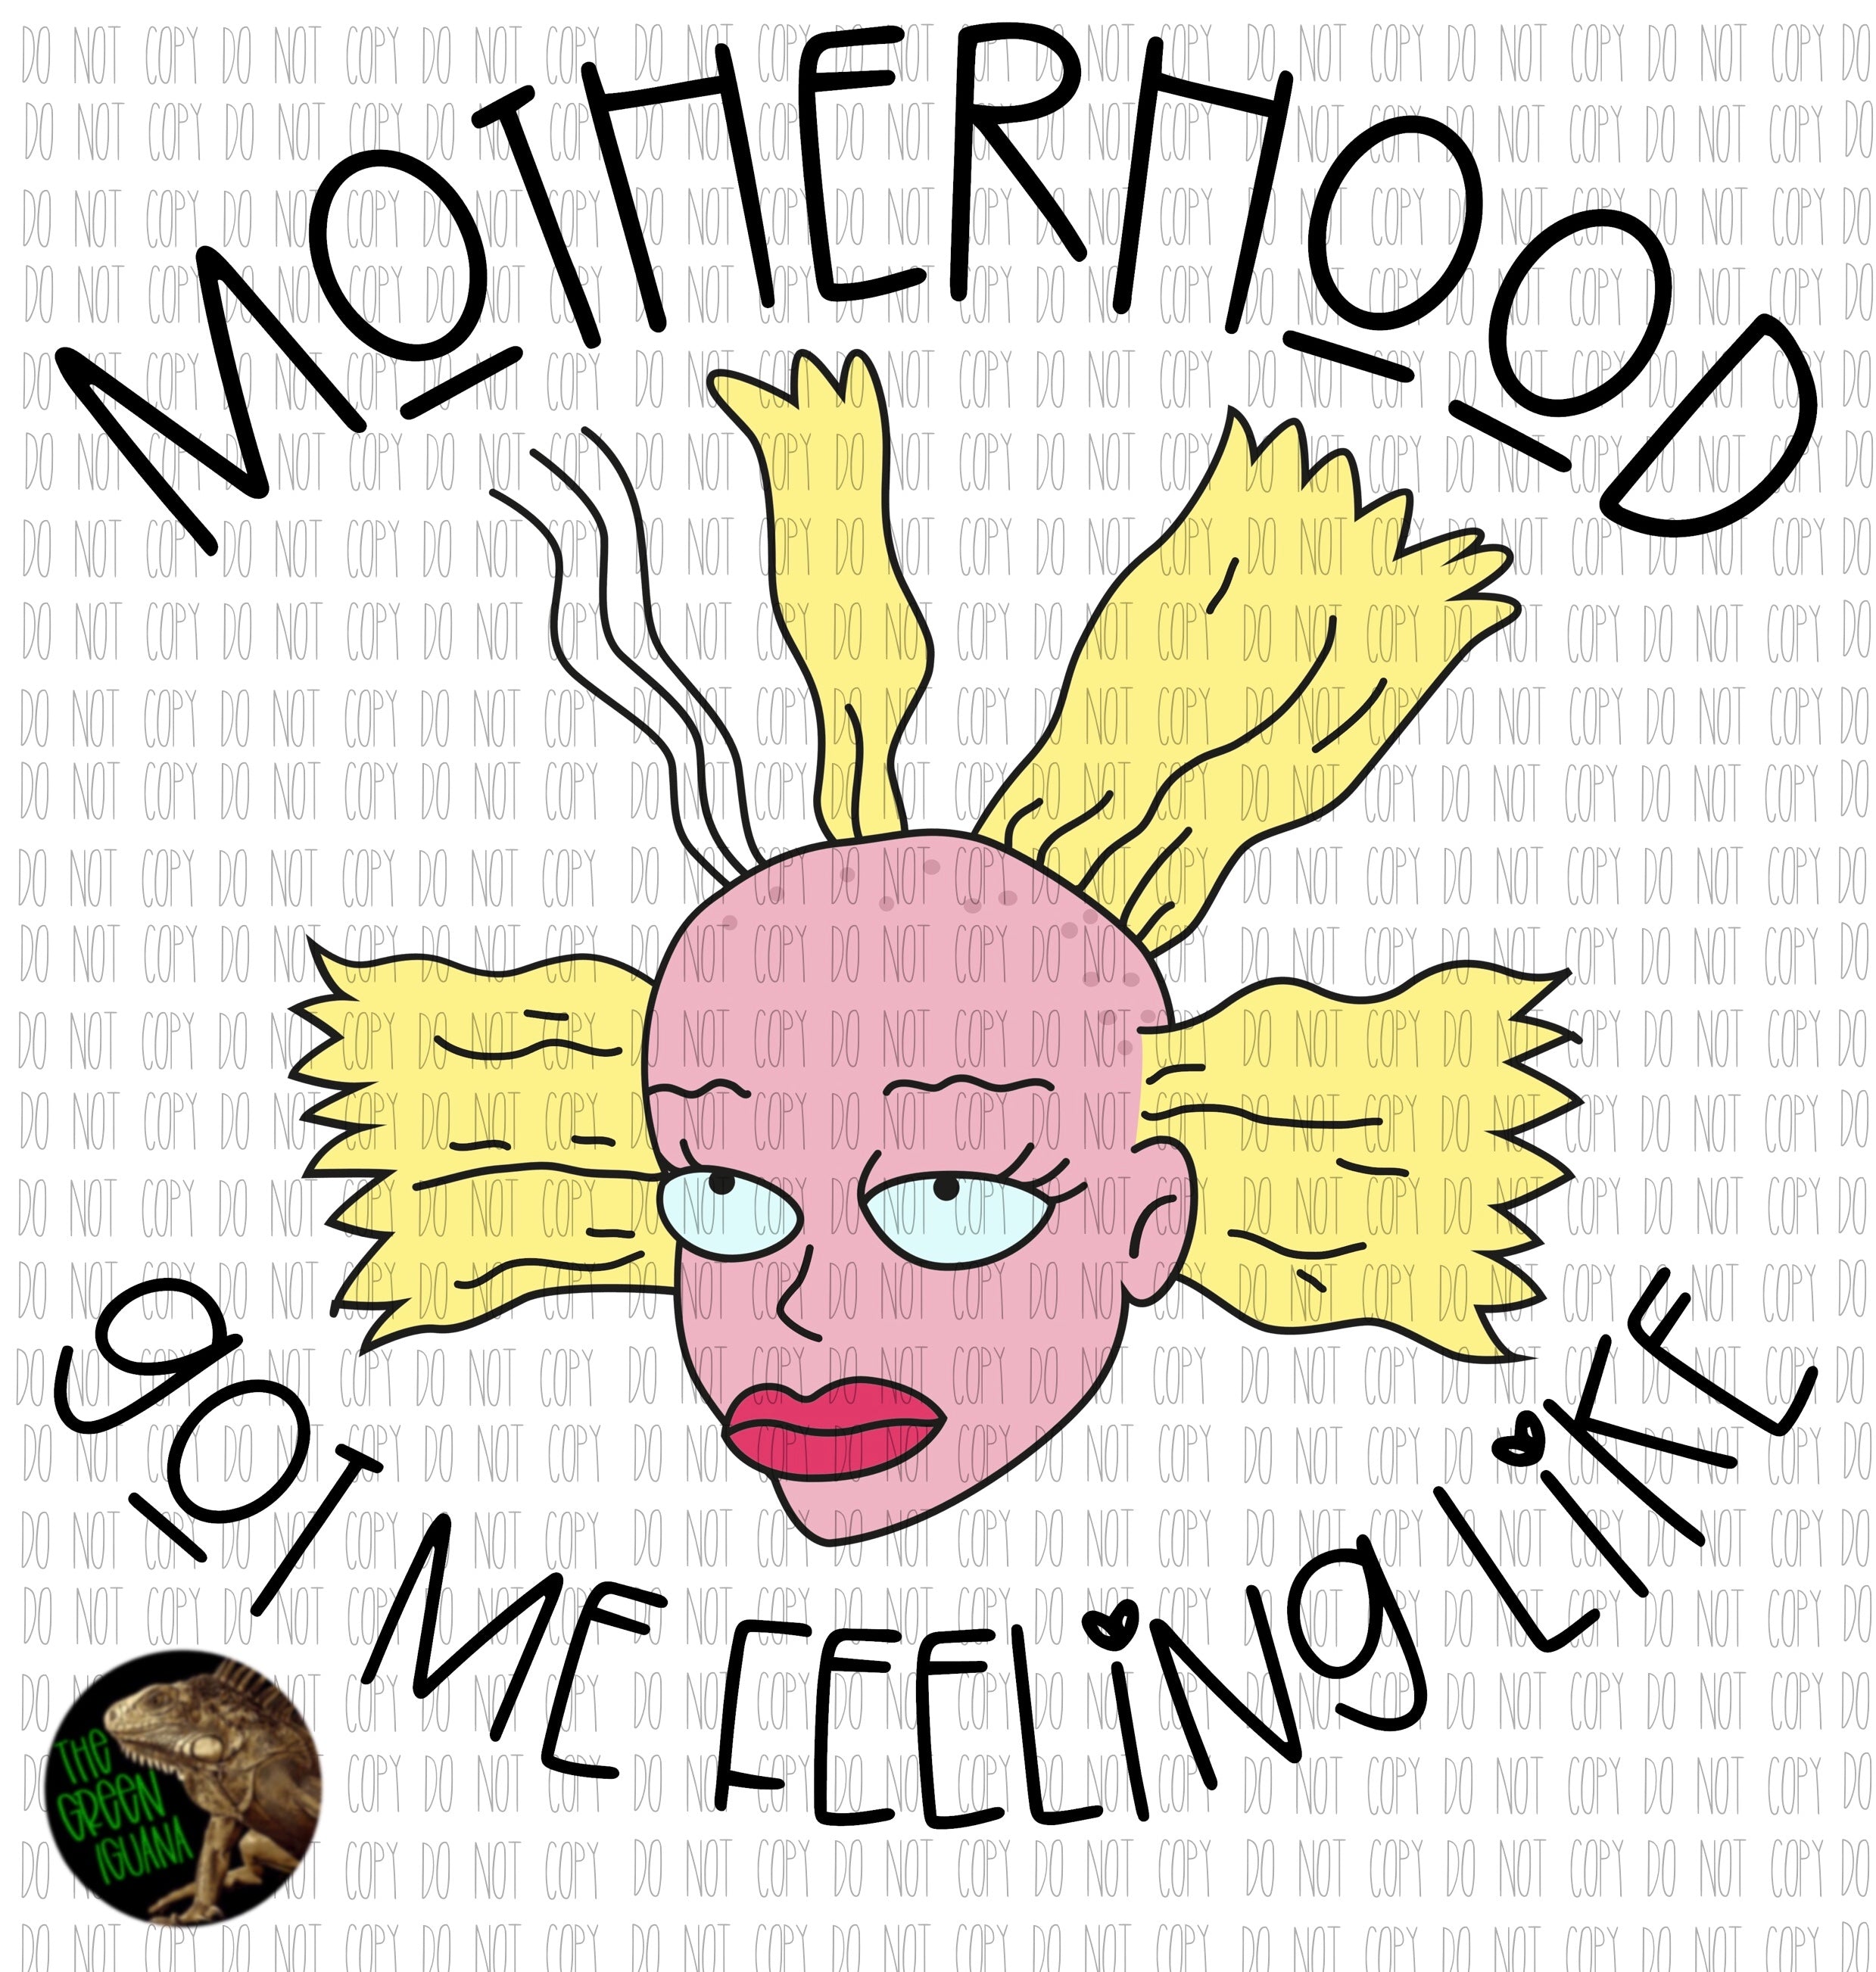 Motherhood got me feeling like - DTF transfer